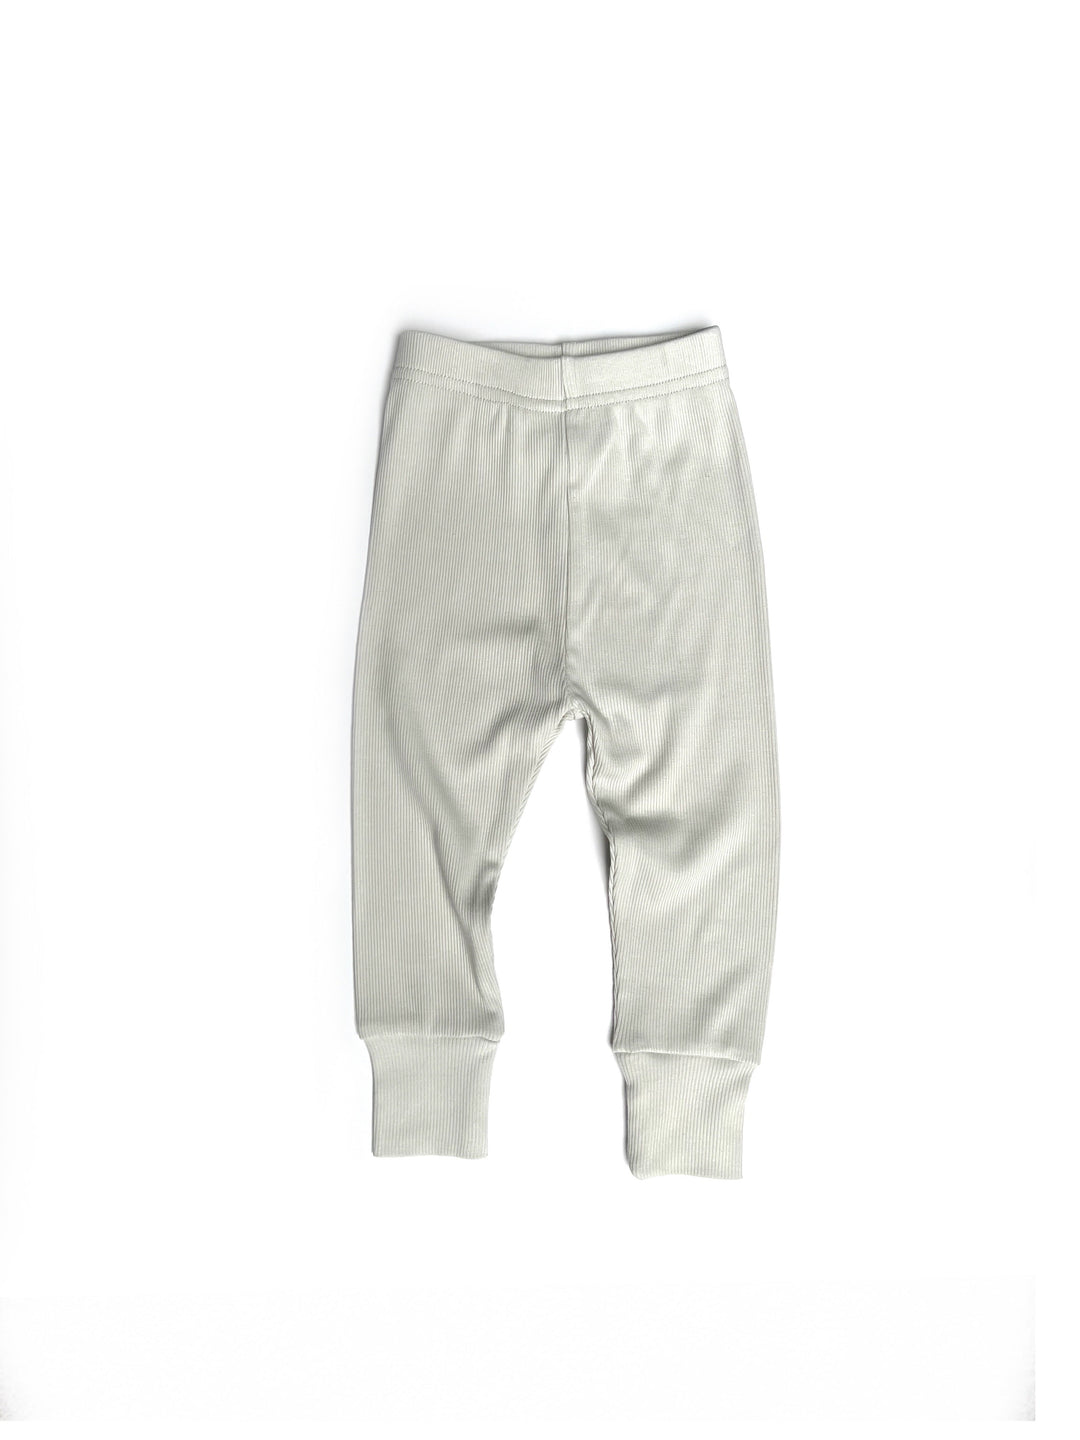 Cashmere baby leggings milk white | baby leggings and socks • Bonpoint